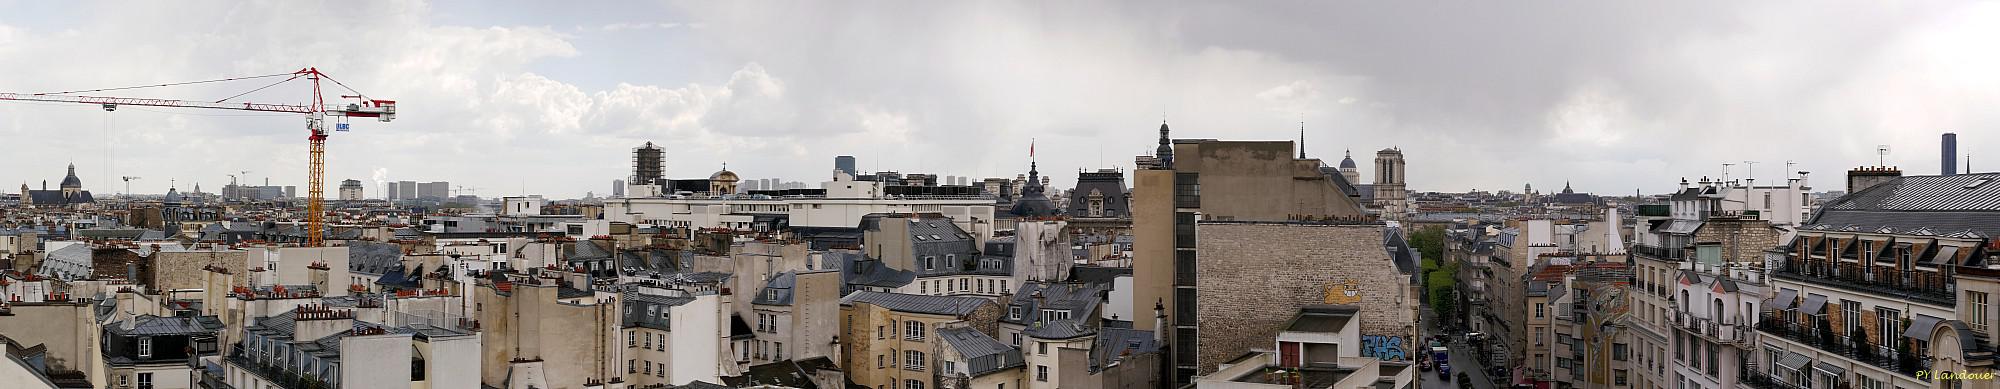 Paris vu d'en haut,  20 rue du Renard